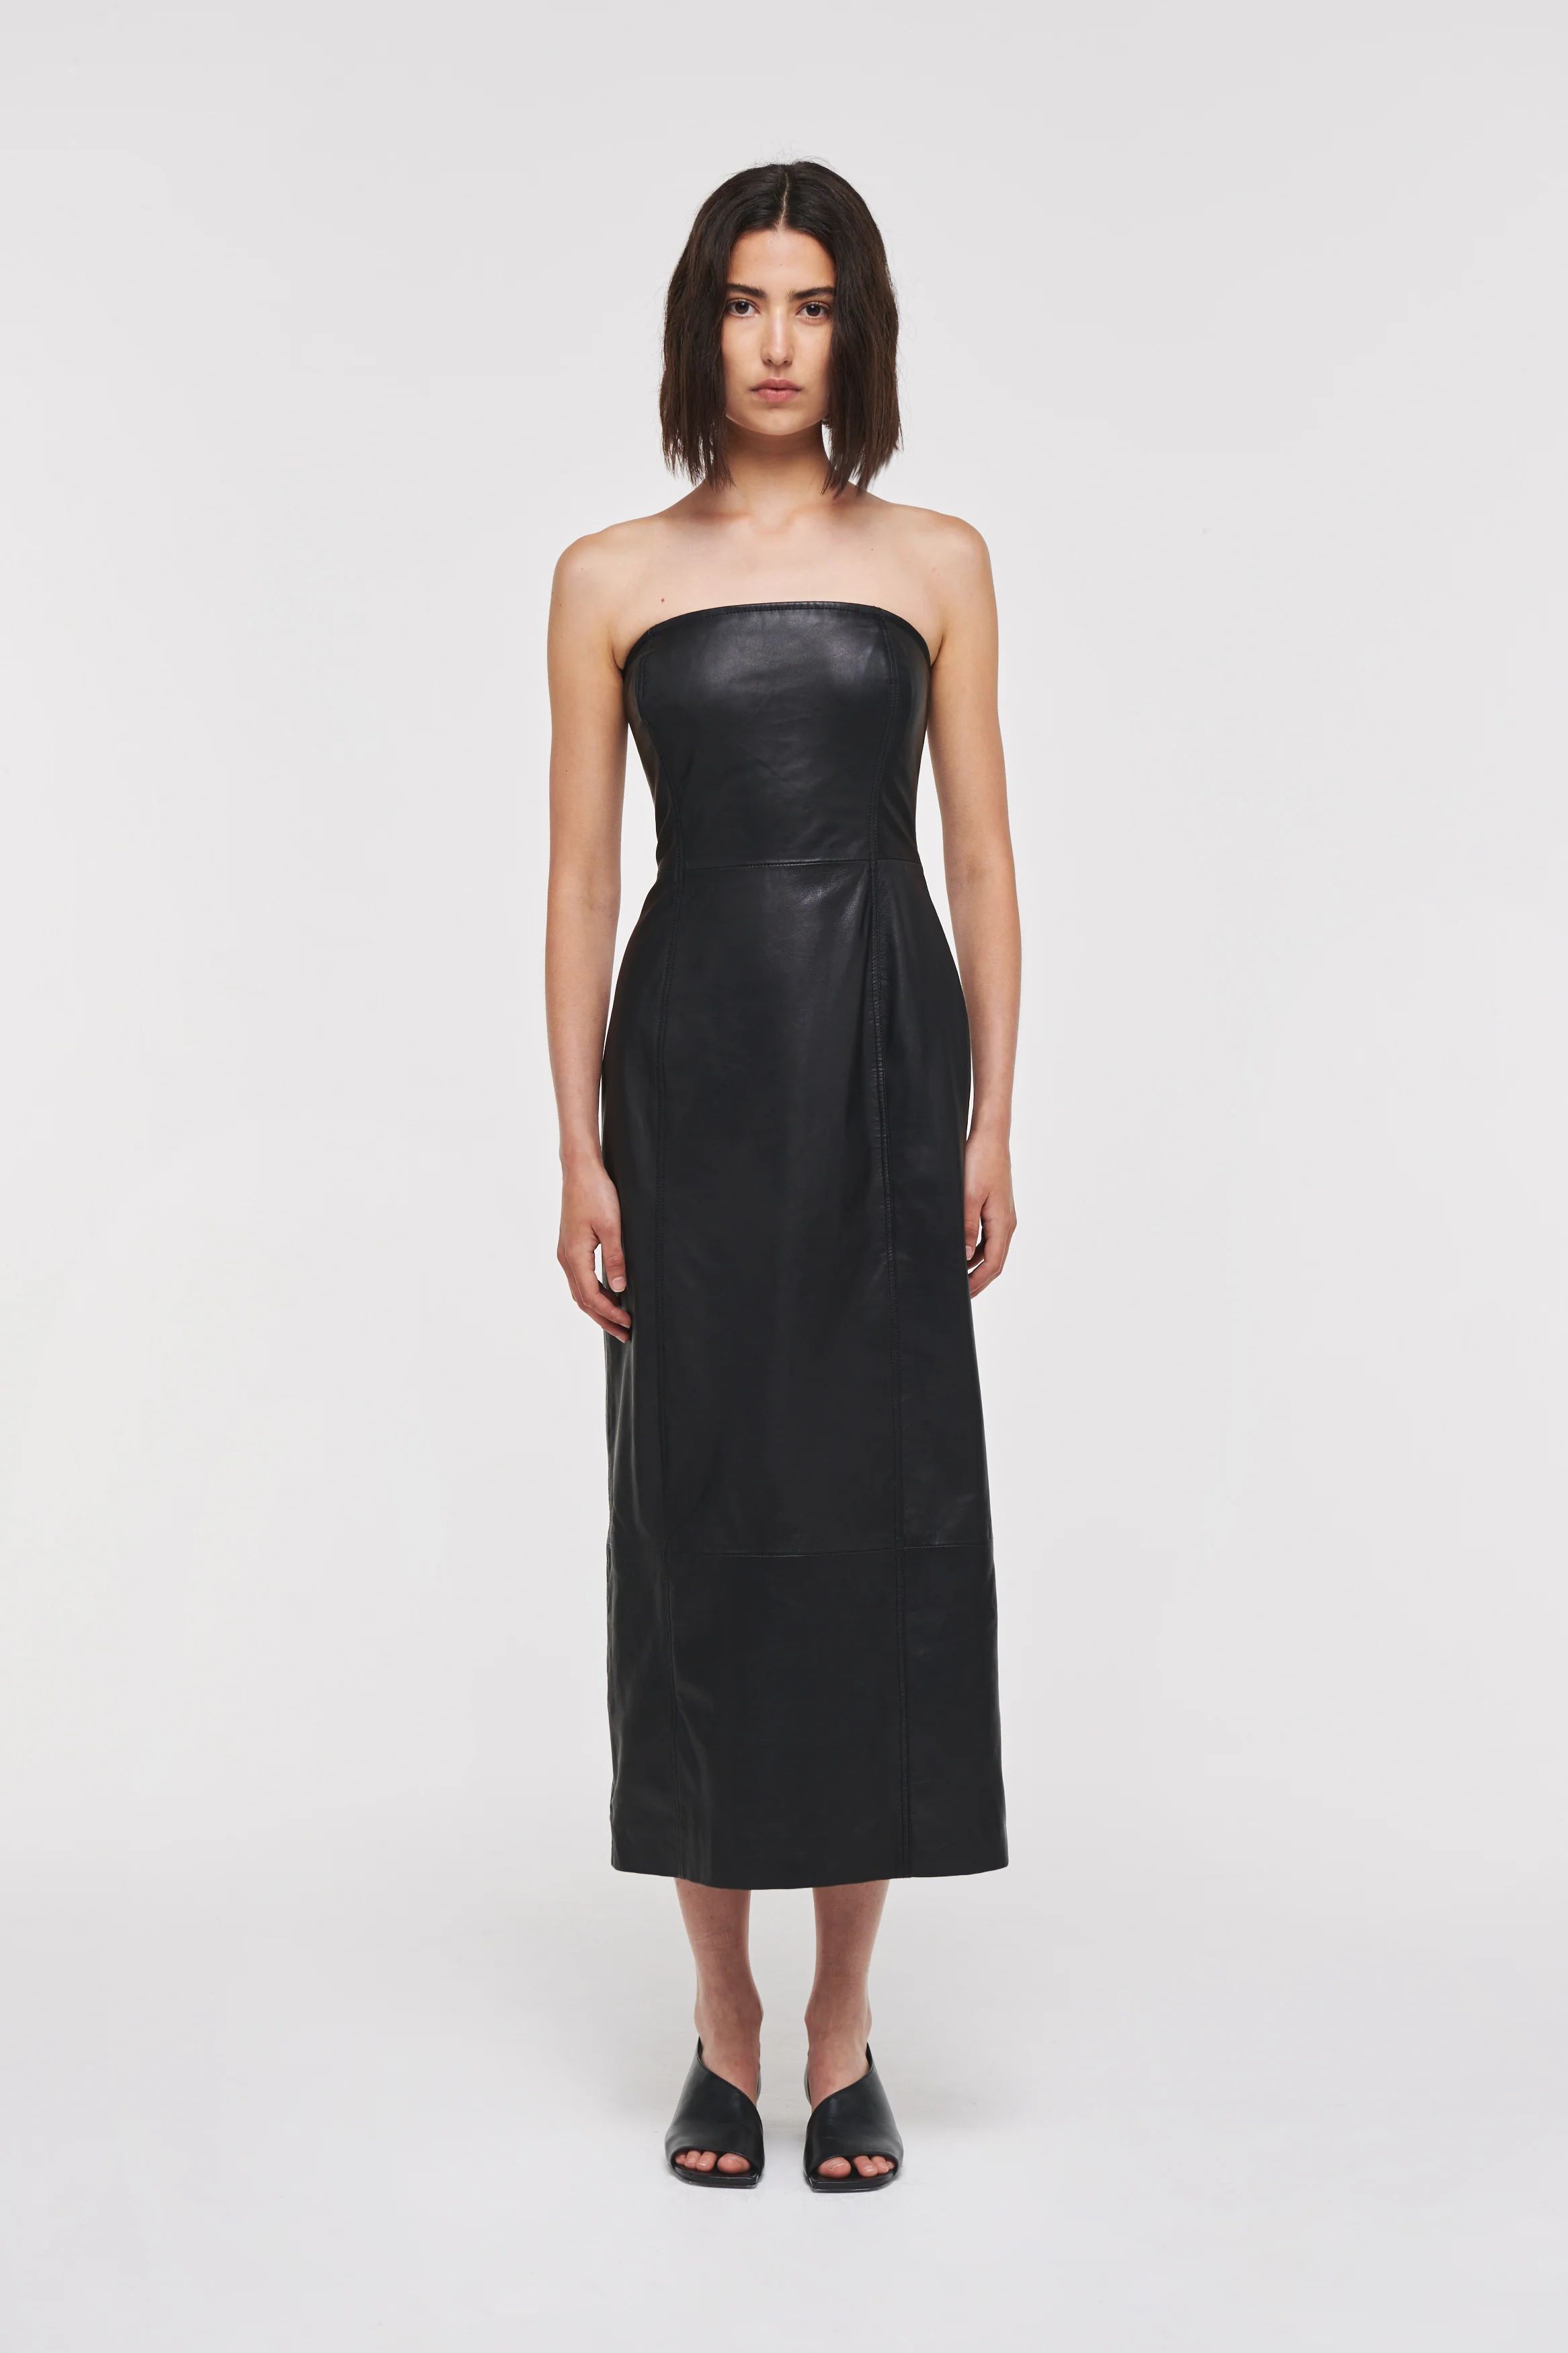 Kenrietta | Leather Tube Dress in Black | ALIGNE | Aligne UK